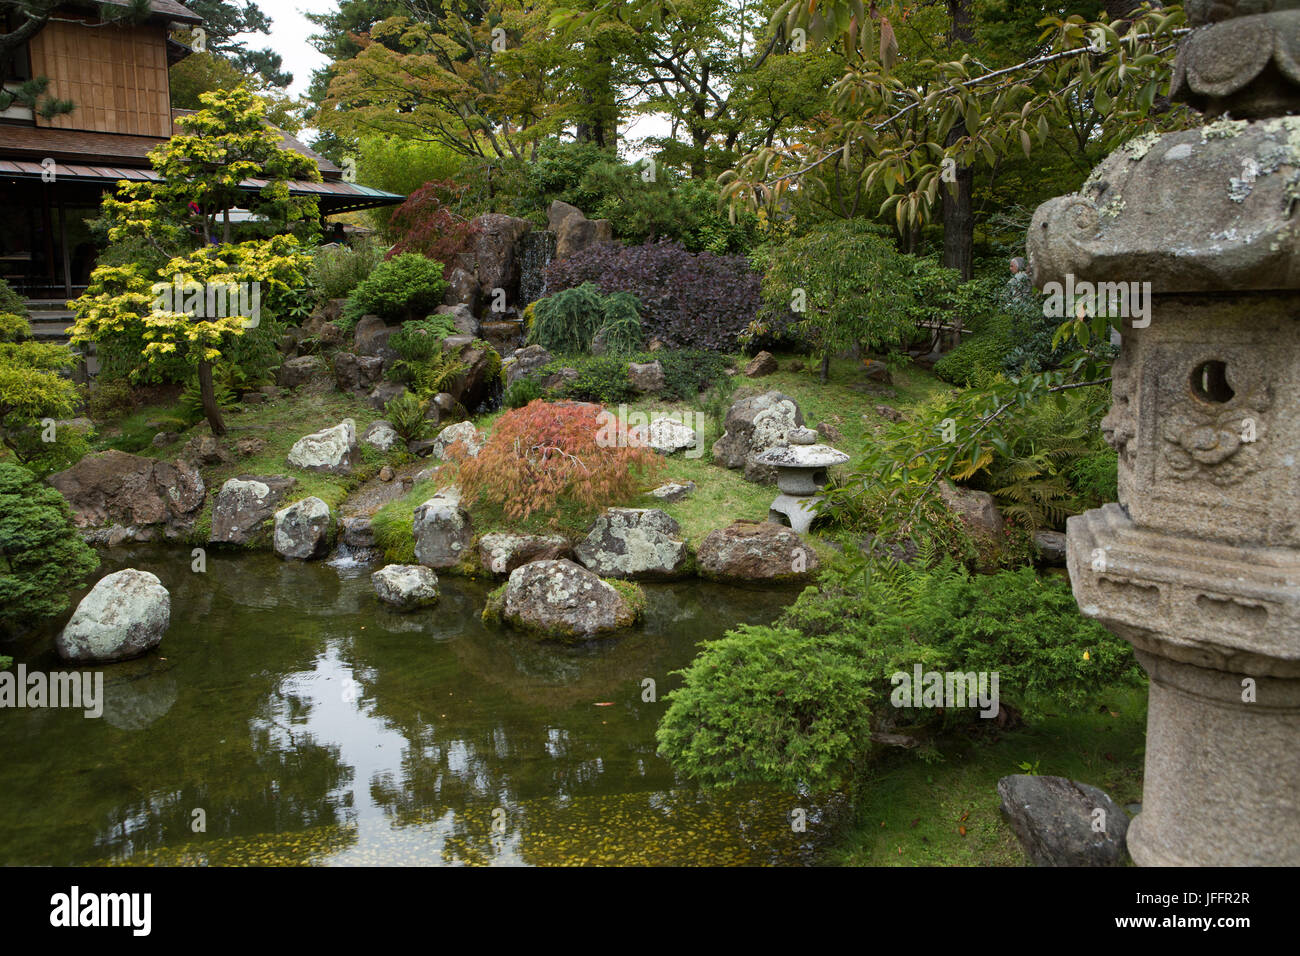 Une vue panoramique d'un étang, jardin de pierre, la sculpture et l'architecture japonaise dans la région de San Francisco's Japanese Tea Garden. Banque D'Images